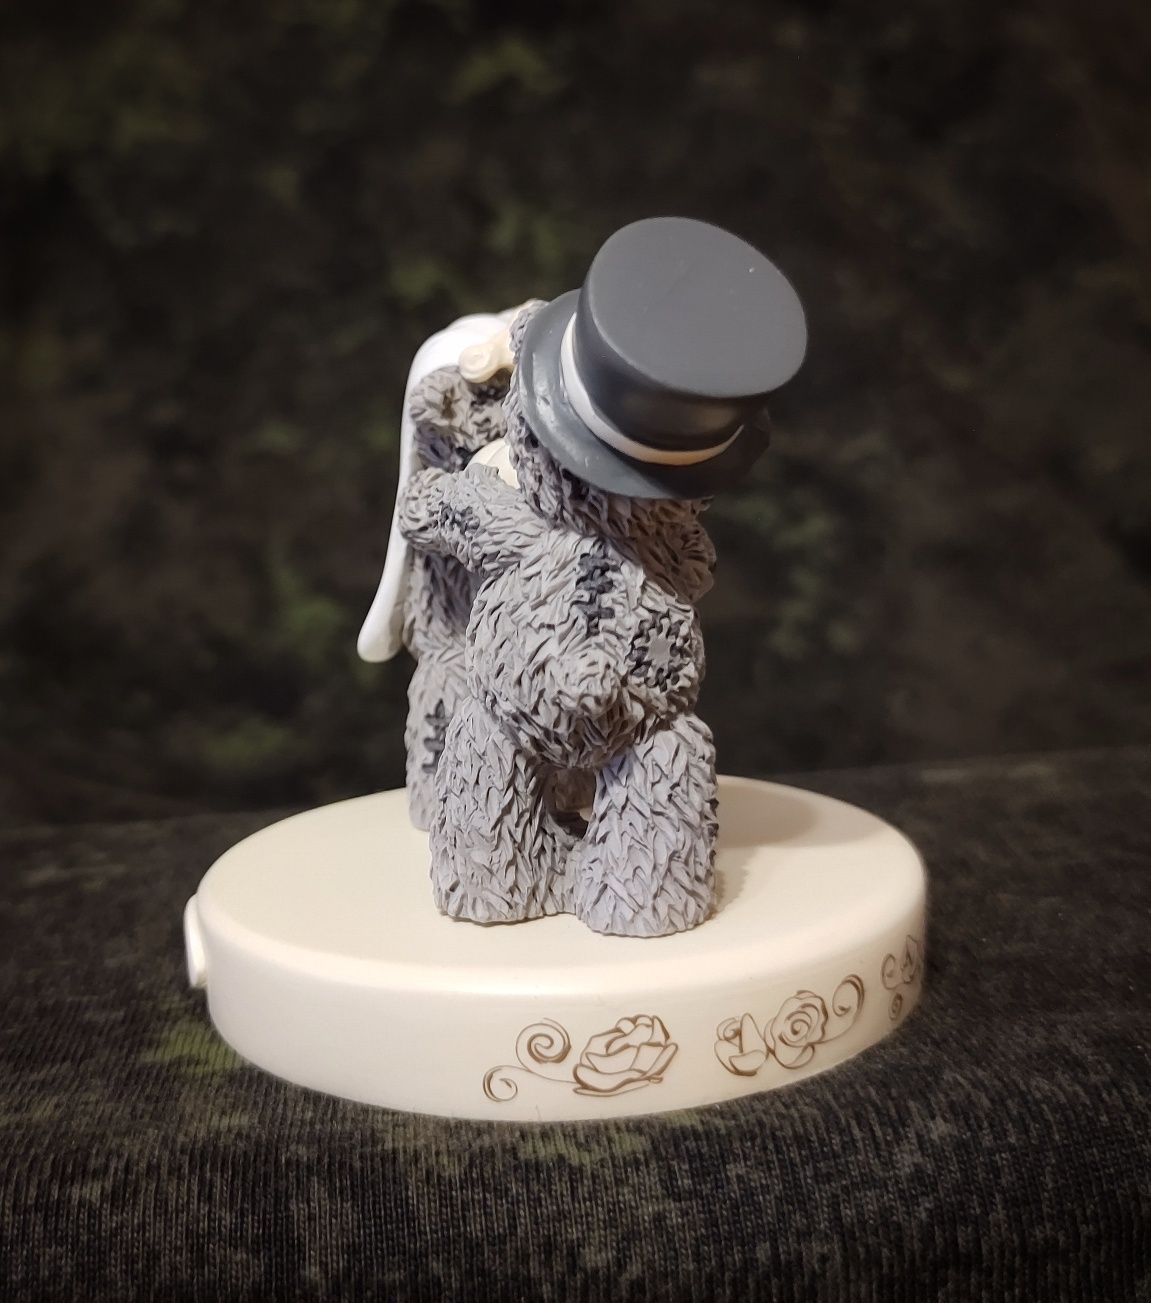 Topper, dekoracja tortu weselnego misie, Me to You

Bride & Groom